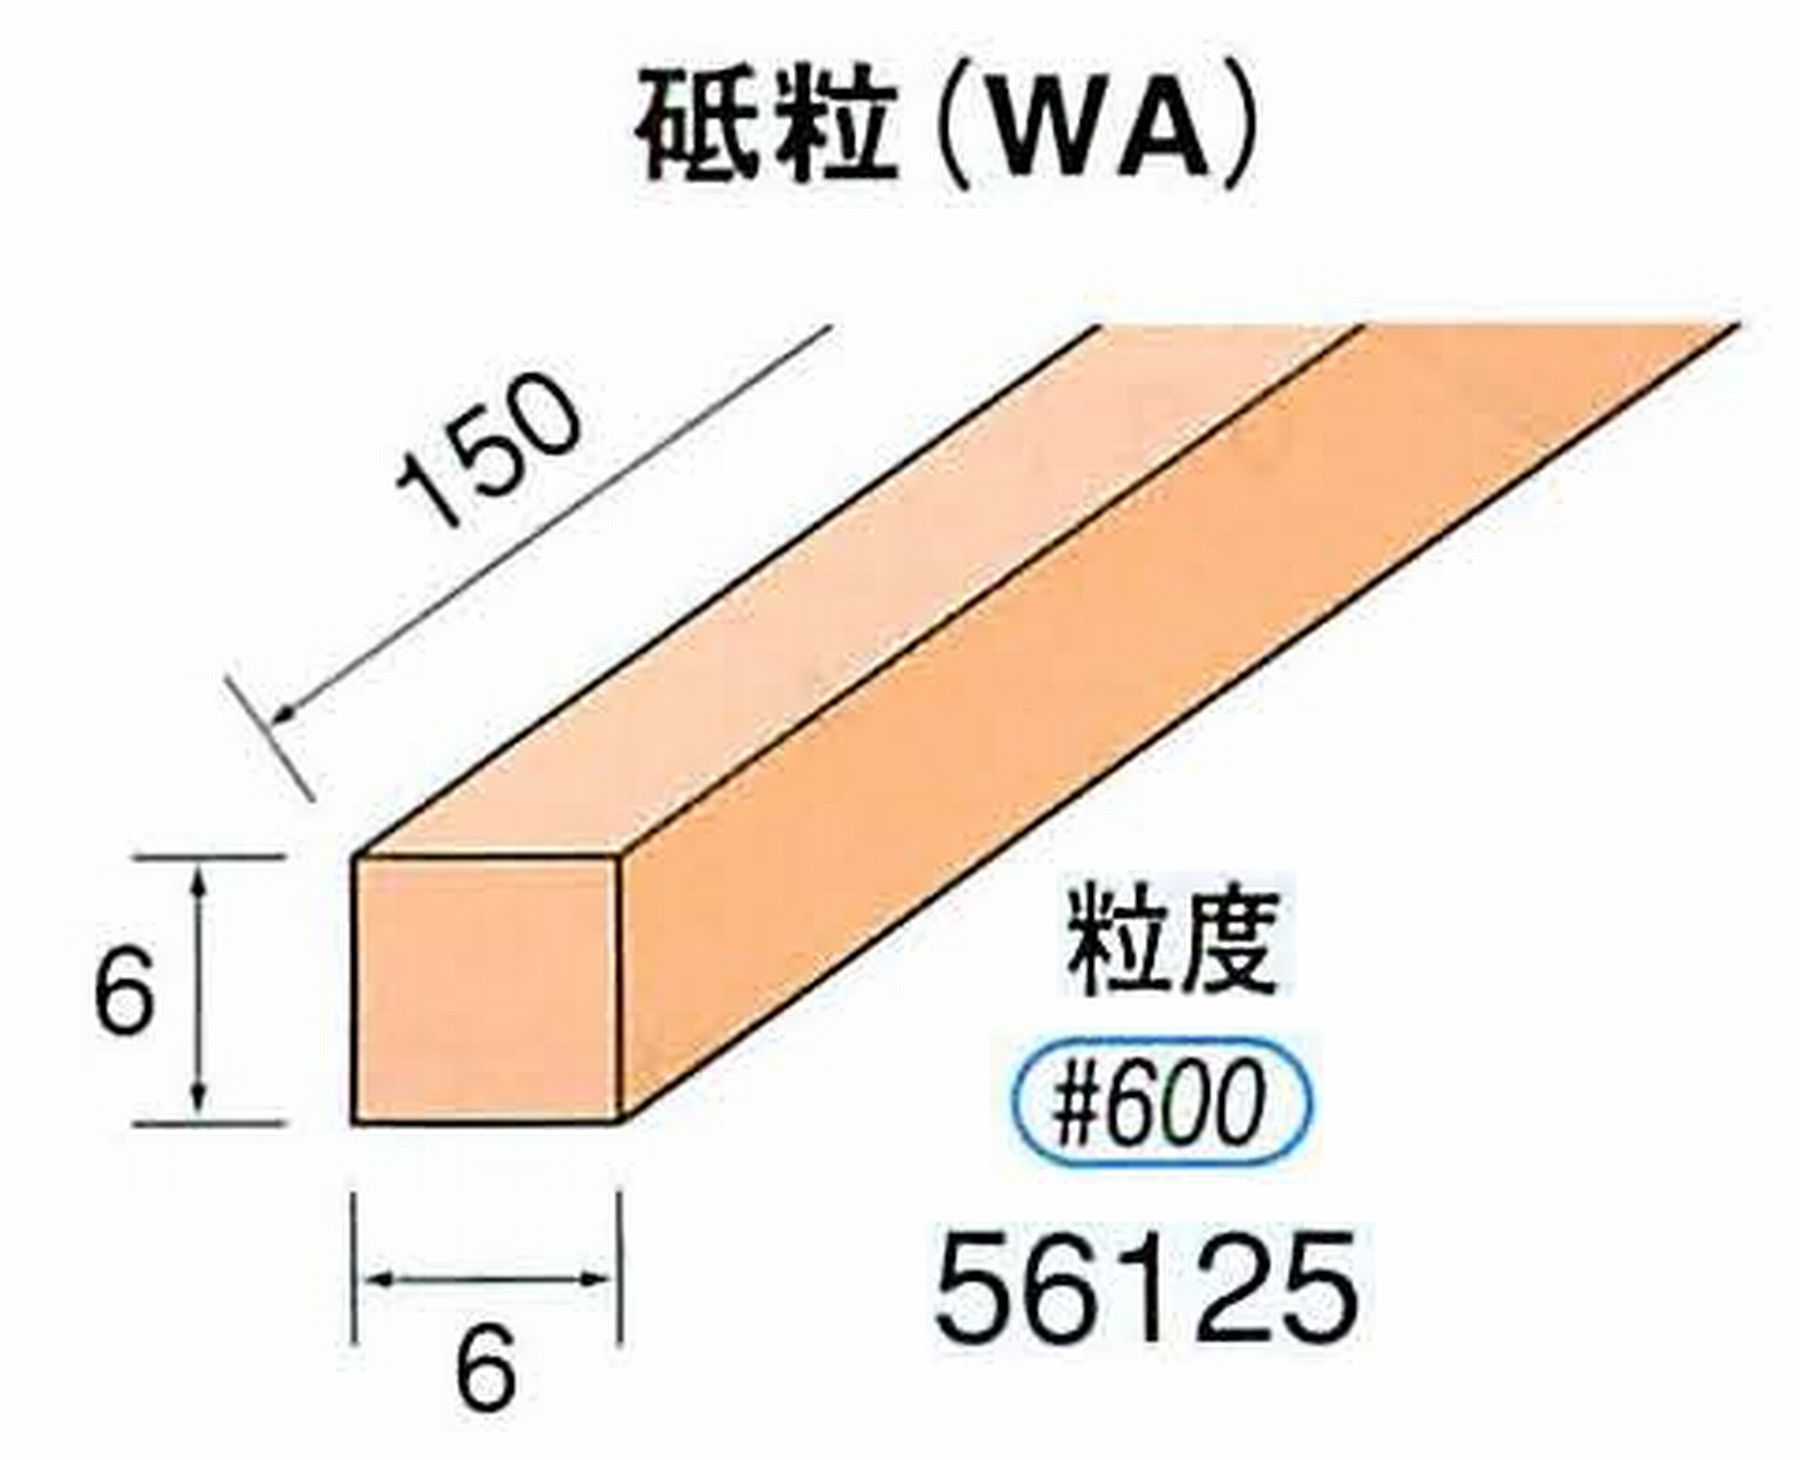 ナカニシ/NAKANISHI スティック砥石 スタンダードシリーズ 砥粒(WA) 56125